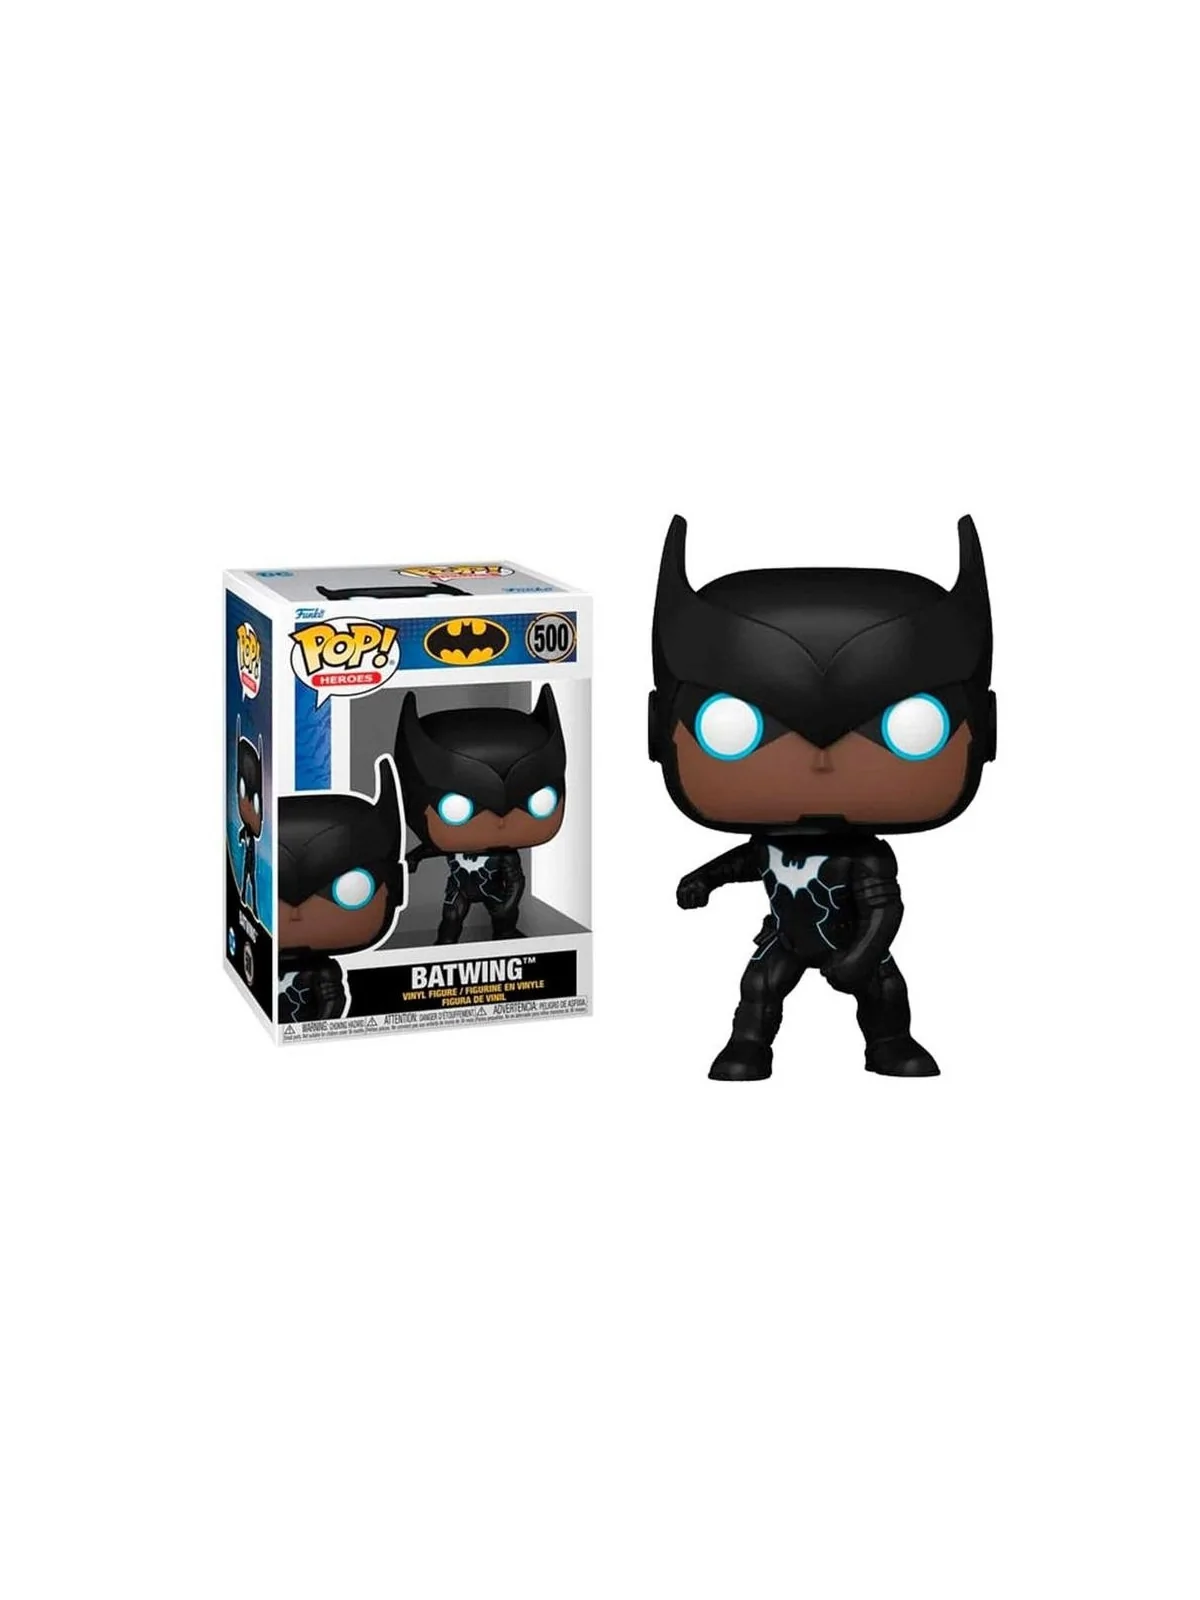 Comprar Funko POP! Batman: Batwing (500) barato al mejor precio 14,41 